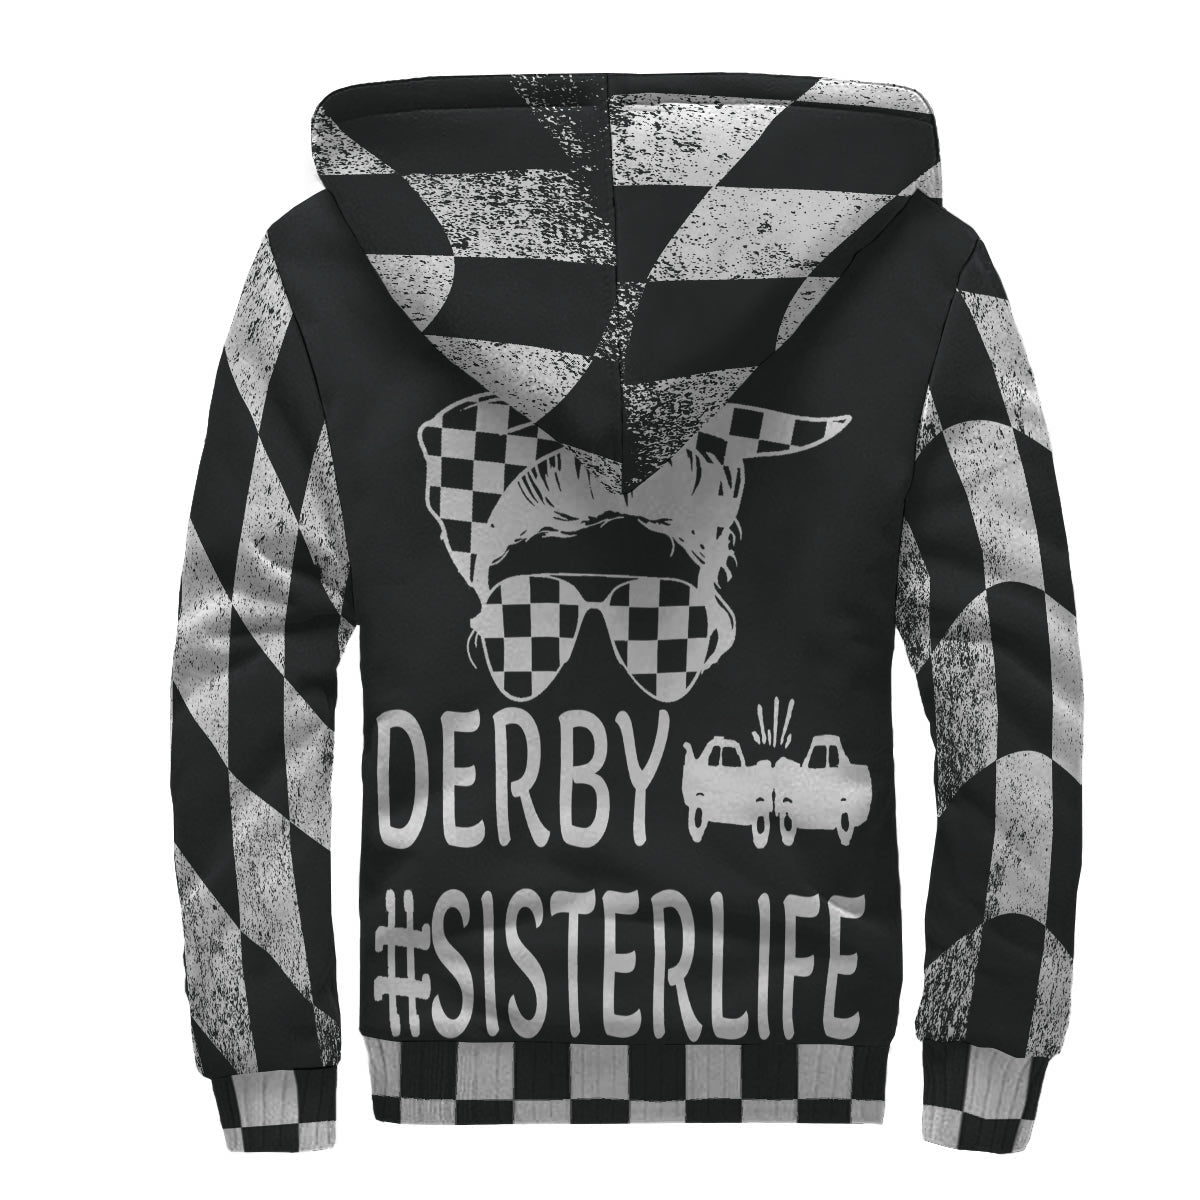 Demolition derby sister jacket